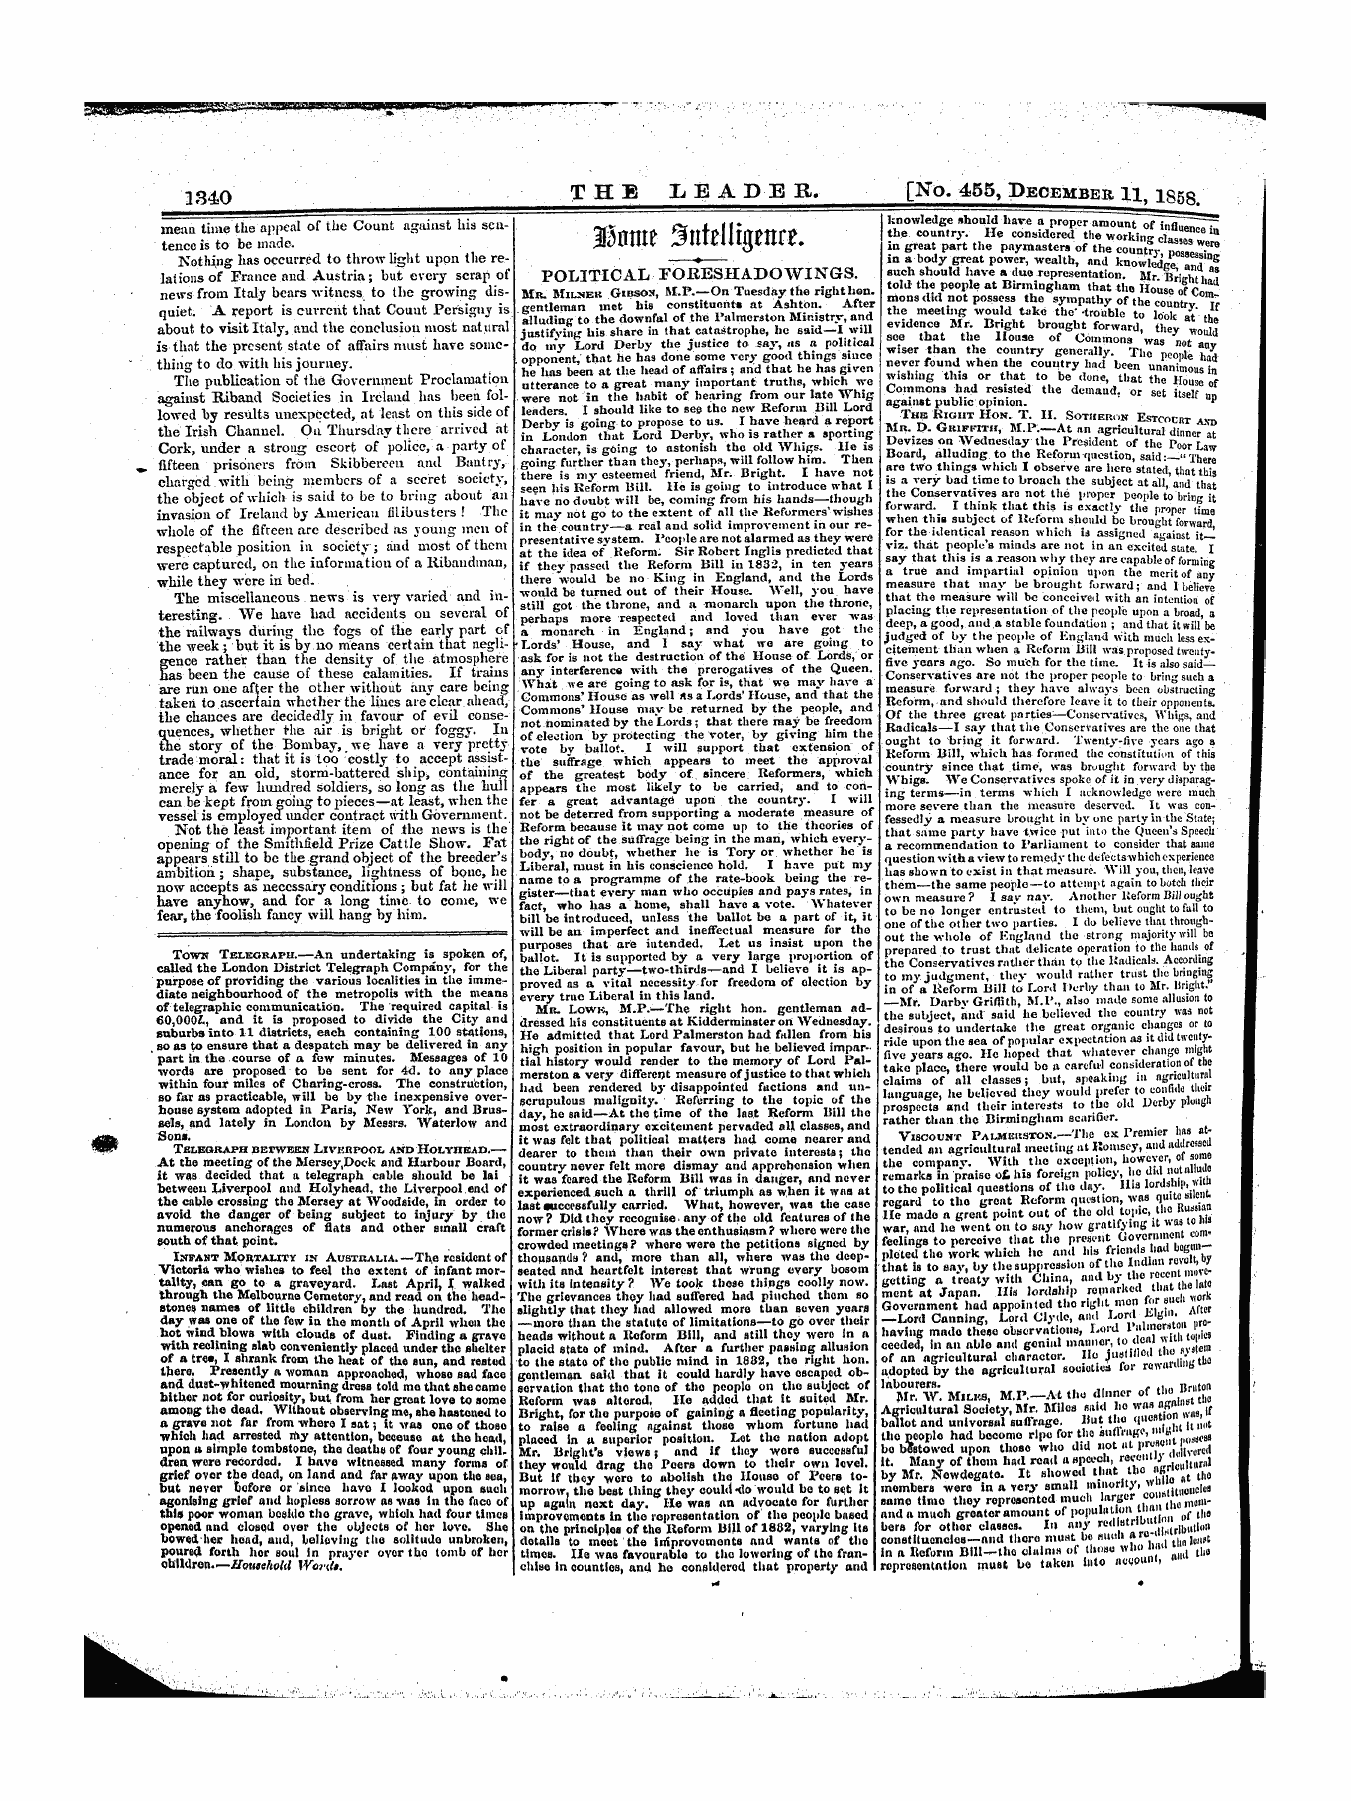 Leader (1850-1860): jS F Y, 1st edition - 33ome Sintelllgranr. _—„ _